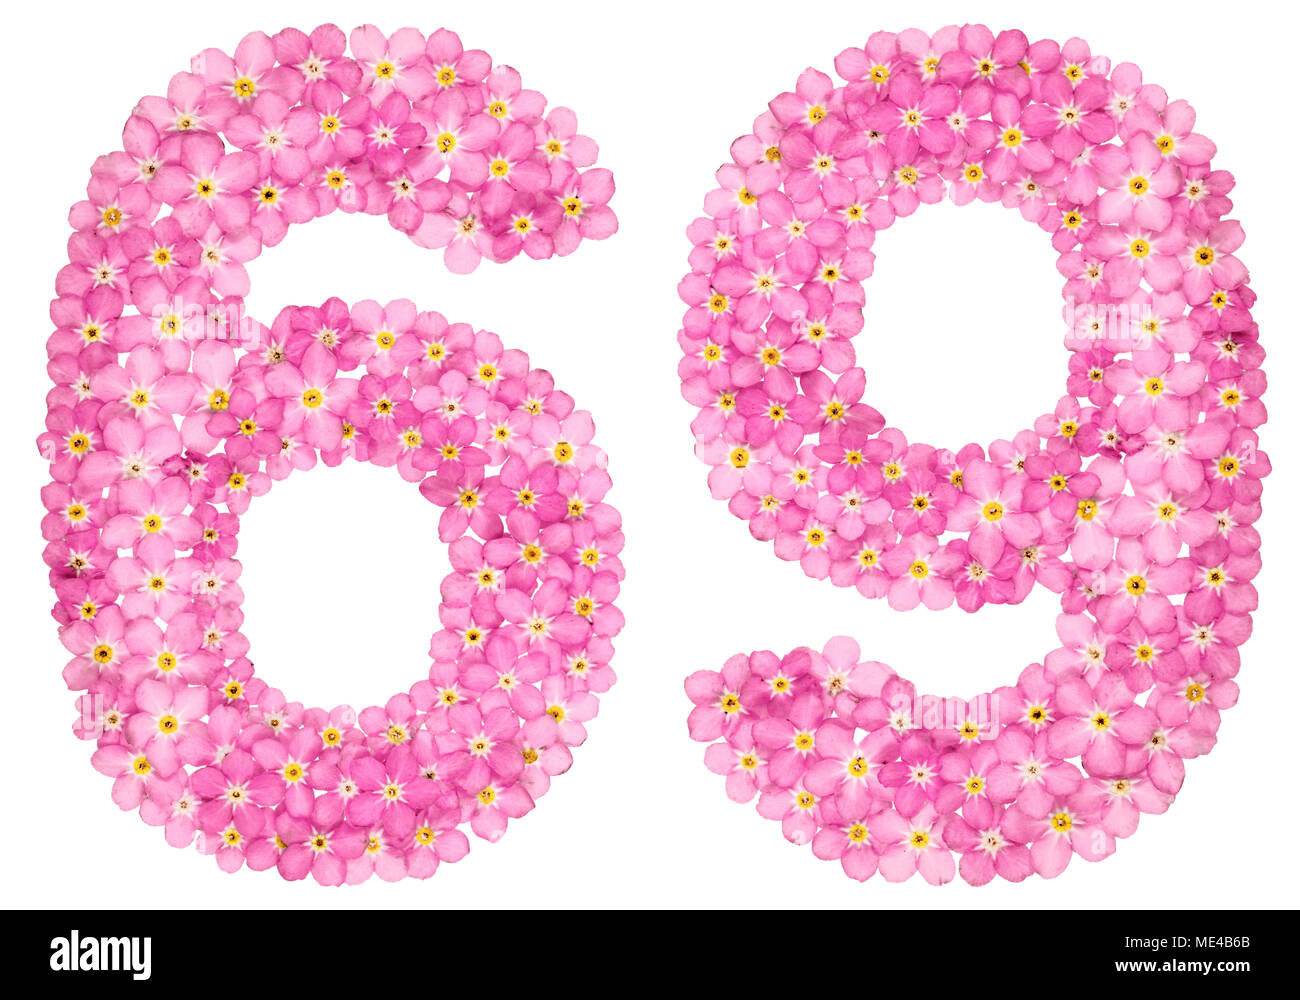 Numero arabo 69, sessanta nove, dal rosa dimenticare-me-non fiori, isolati su sfondo bianco Foto Stock